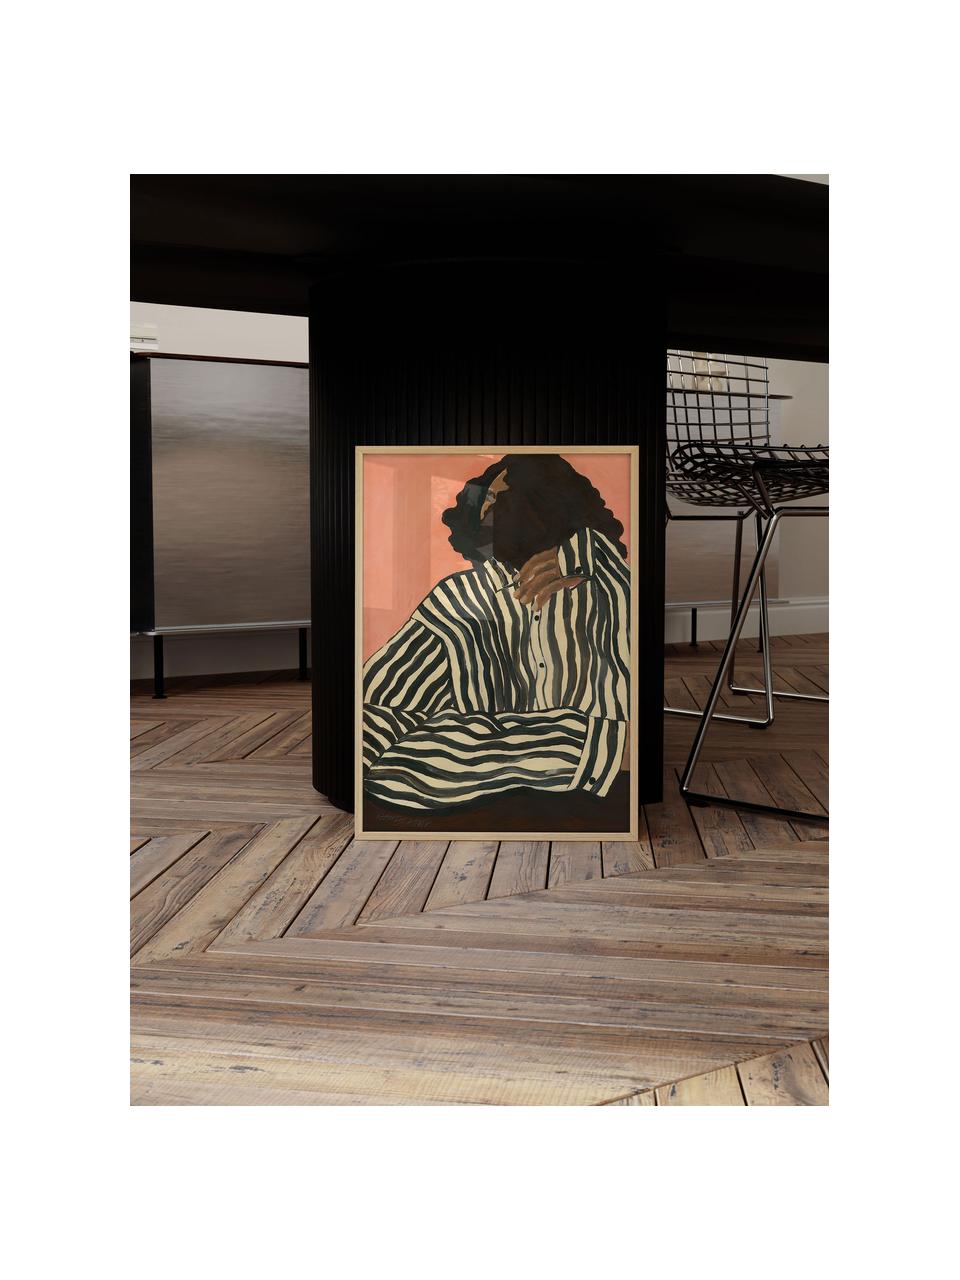 Poster Serene Stripes by Hanna Peterson x The Poster Club, Rosso corallo, nero, multicolore, Larg. 30 x Alt. 40 cm